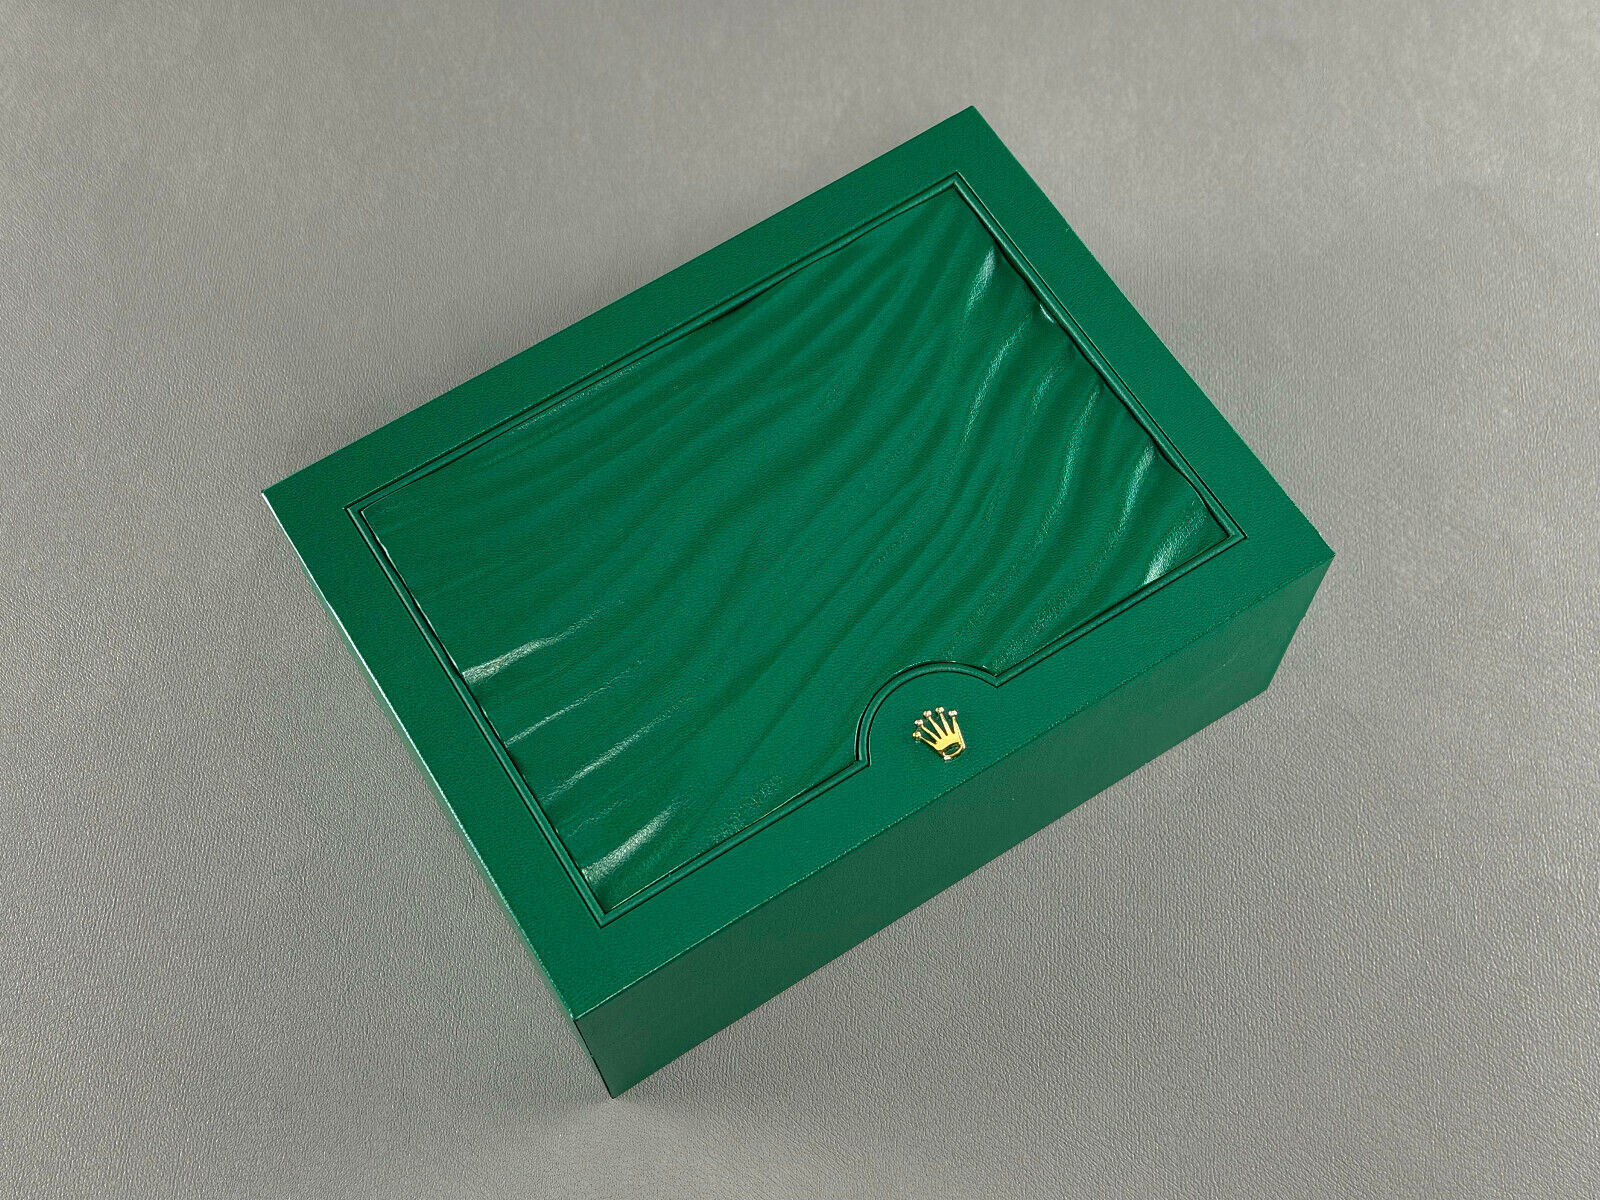 Rolex Oyster Box Größe L 39141.01